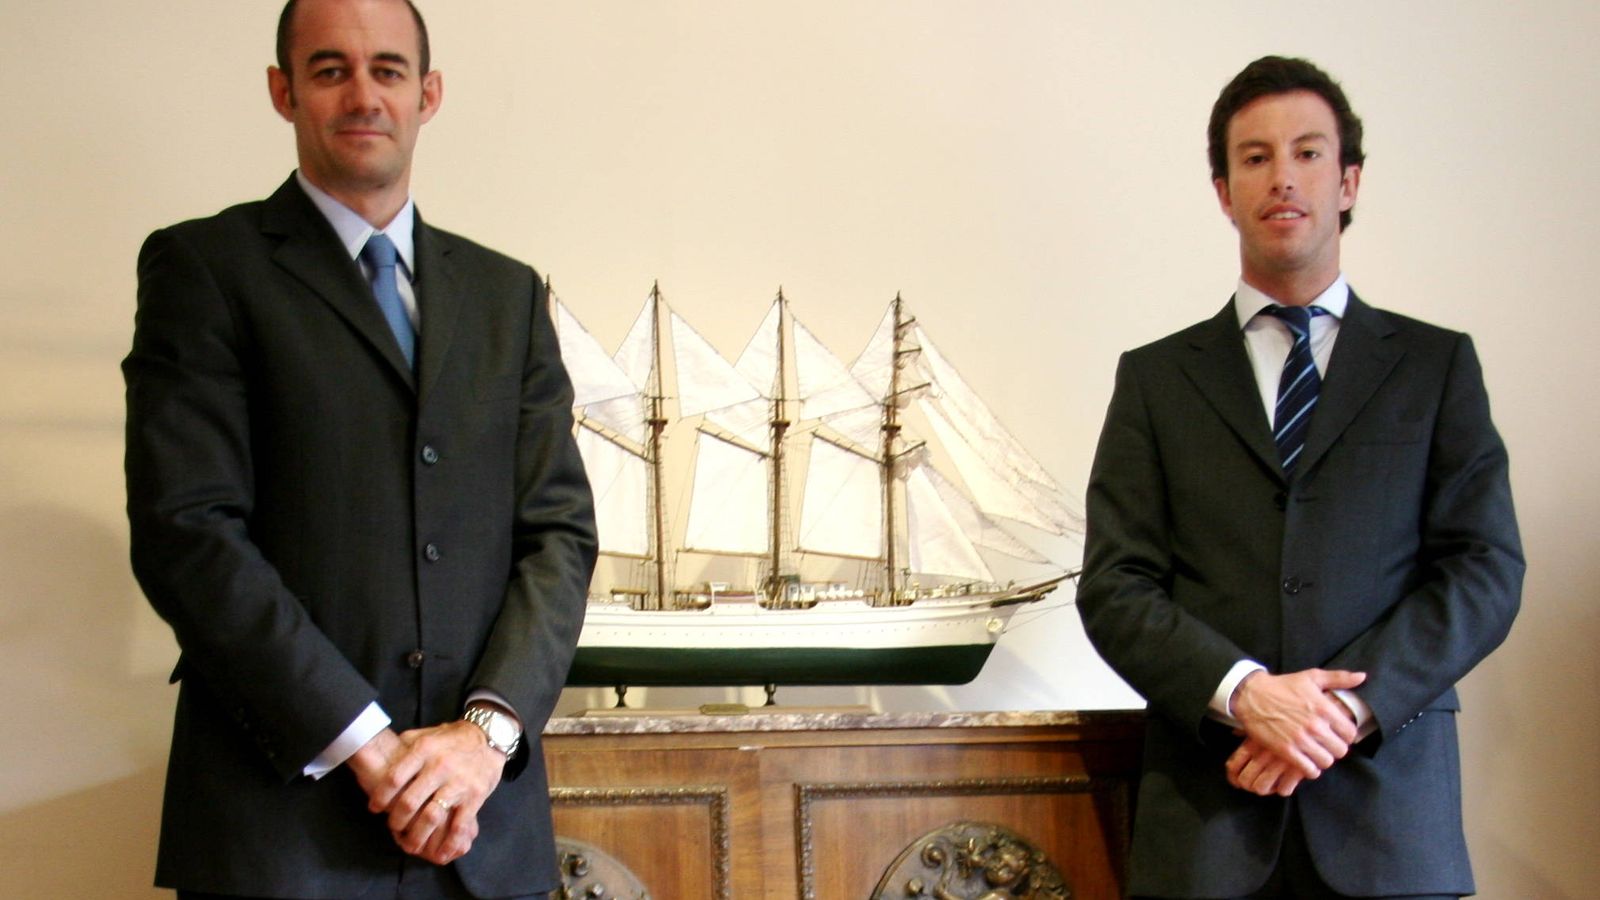 Foto: JJ Fernández y Marc Batllé, gestores de Elcano sicav.